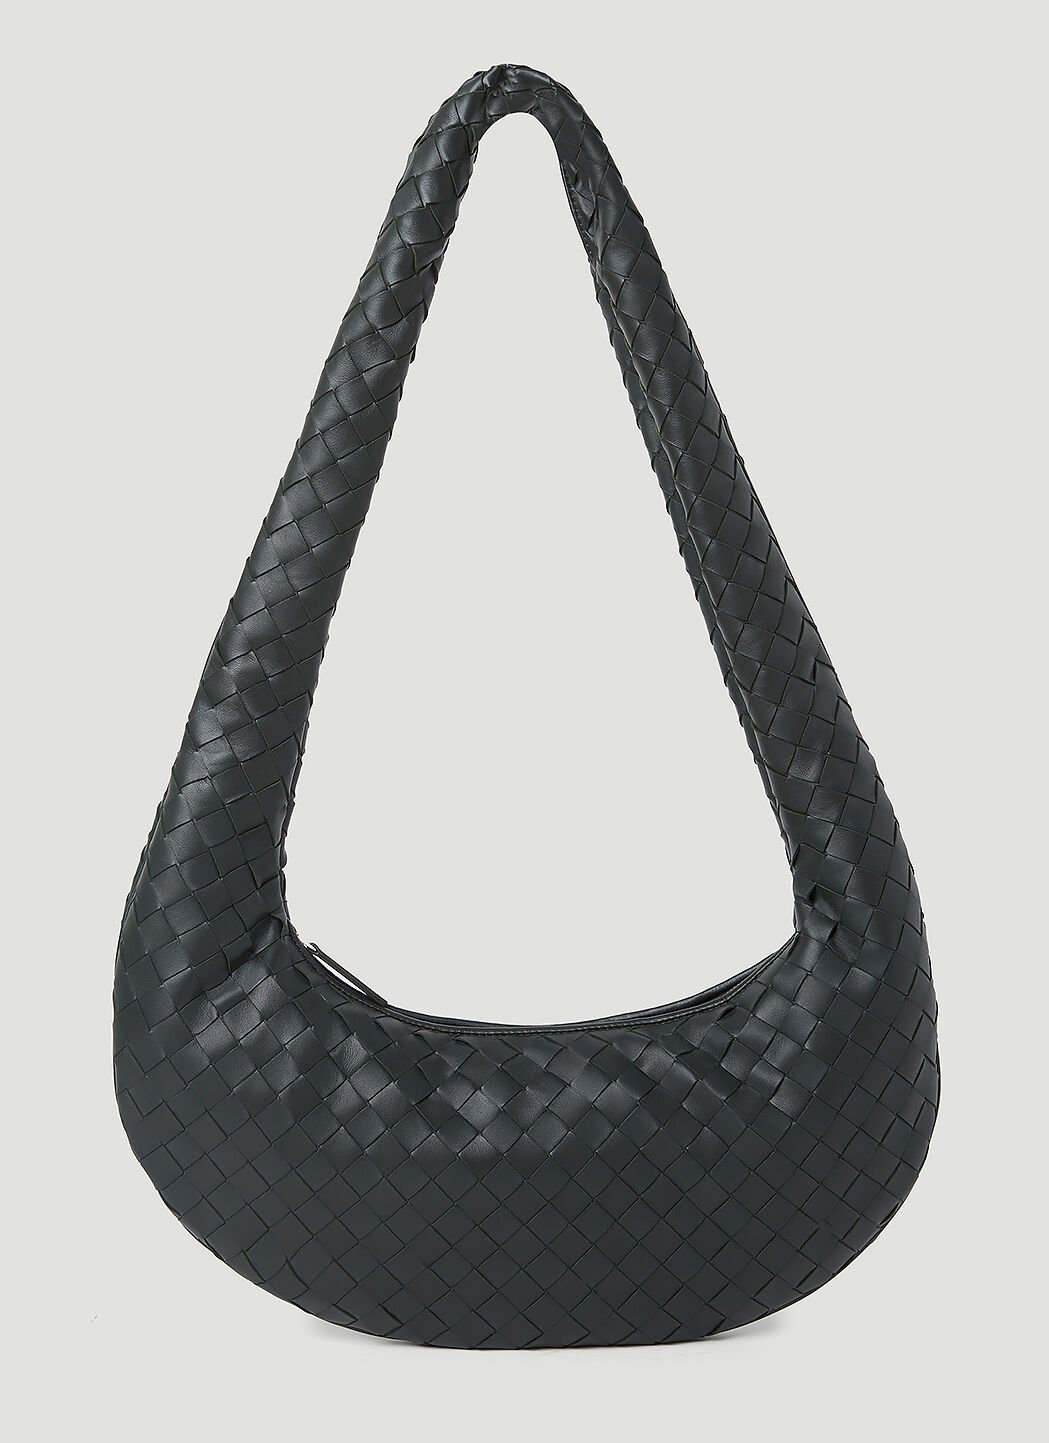 Bottega Veneta Intrecciato Leather Crossbody Bag 블랙 bov0155010